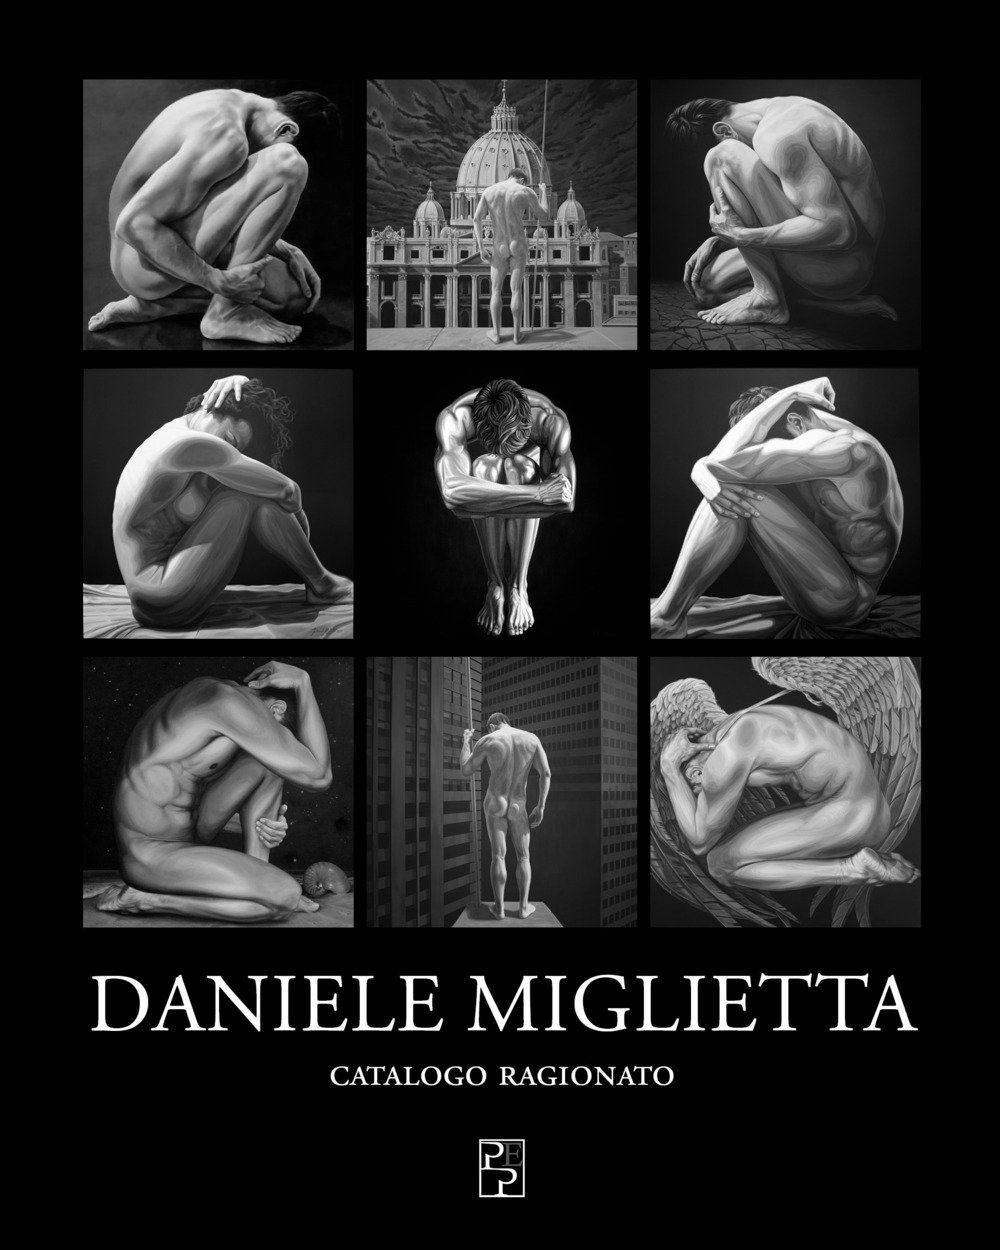 Daniele Miglietta. Catalogo Ragionato, Bologna, Persiani Editore, 2019